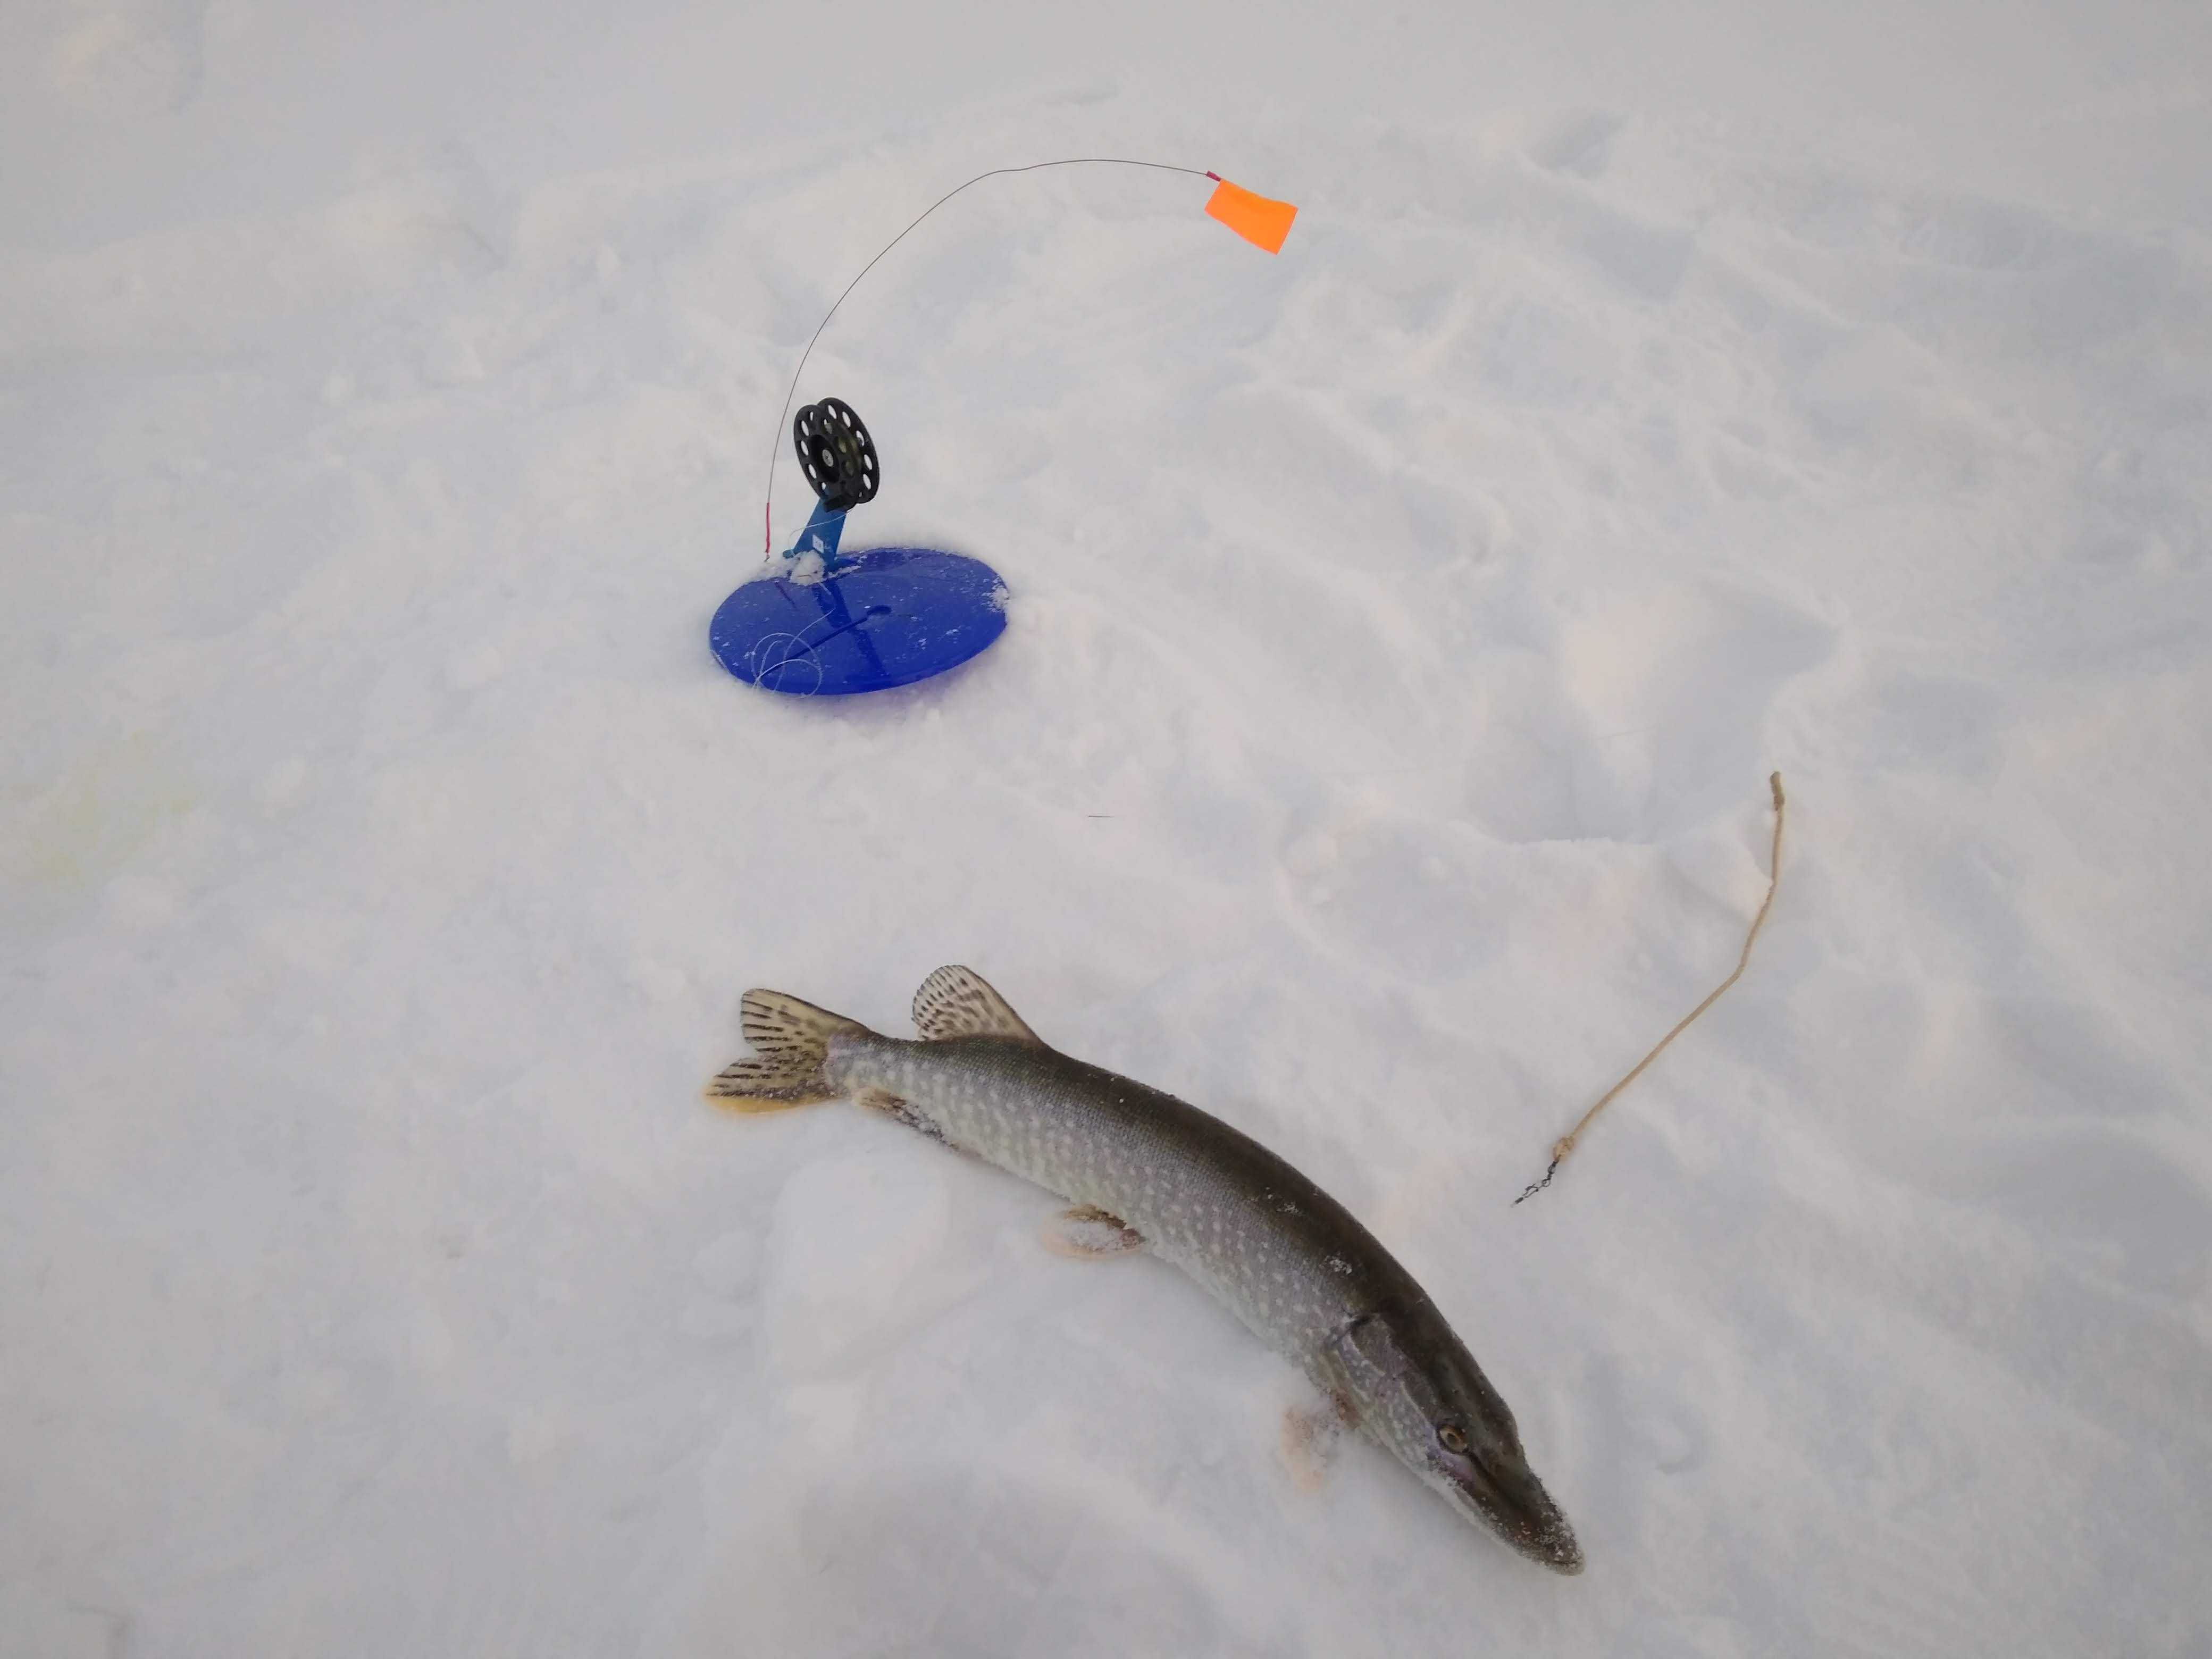 Жерлицы для зимней рыбалки: критерии выбора и изготовление